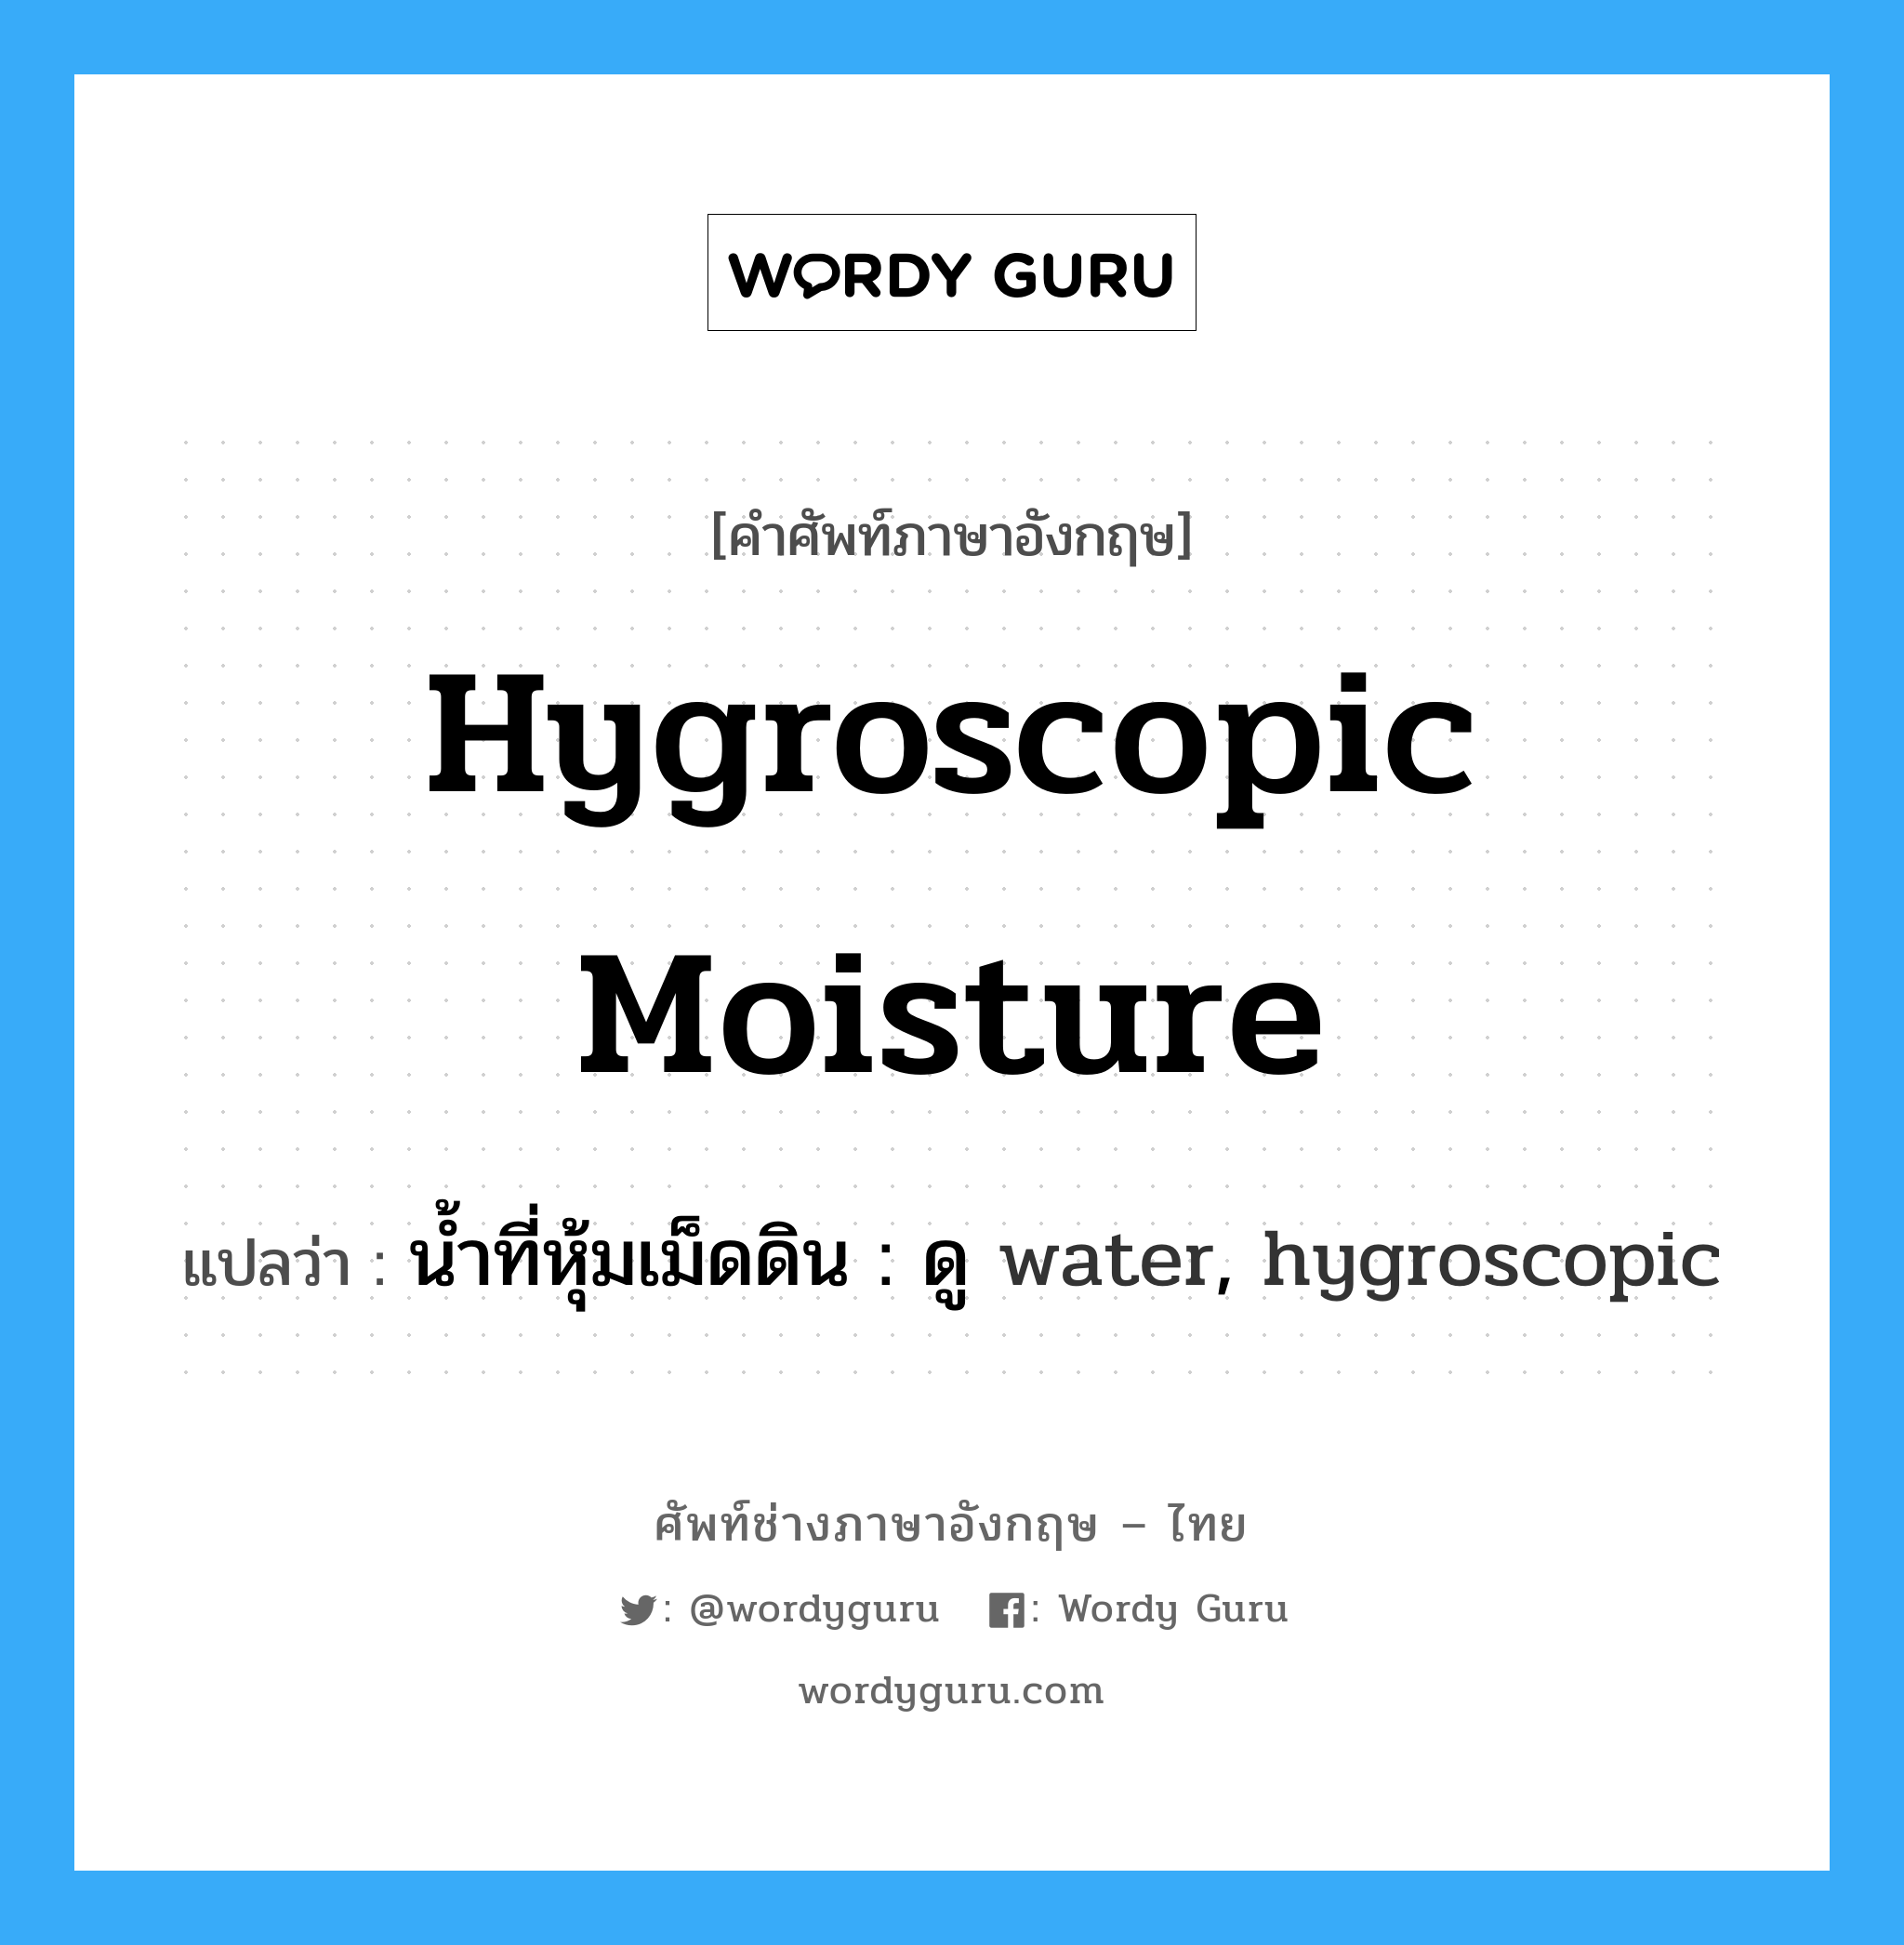 น้ำที่หุ้มเม็ดดิน : ดู water, hygroscopic ภาษาอังกฤษ?, คำศัพท์ช่างภาษาอังกฤษ - ไทย น้ำที่หุ้มเม็ดดิน : ดู water, hygroscopic คำศัพท์ภาษาอังกฤษ น้ำที่หุ้มเม็ดดิน : ดู water, hygroscopic แปลว่า hygroscopic moisture